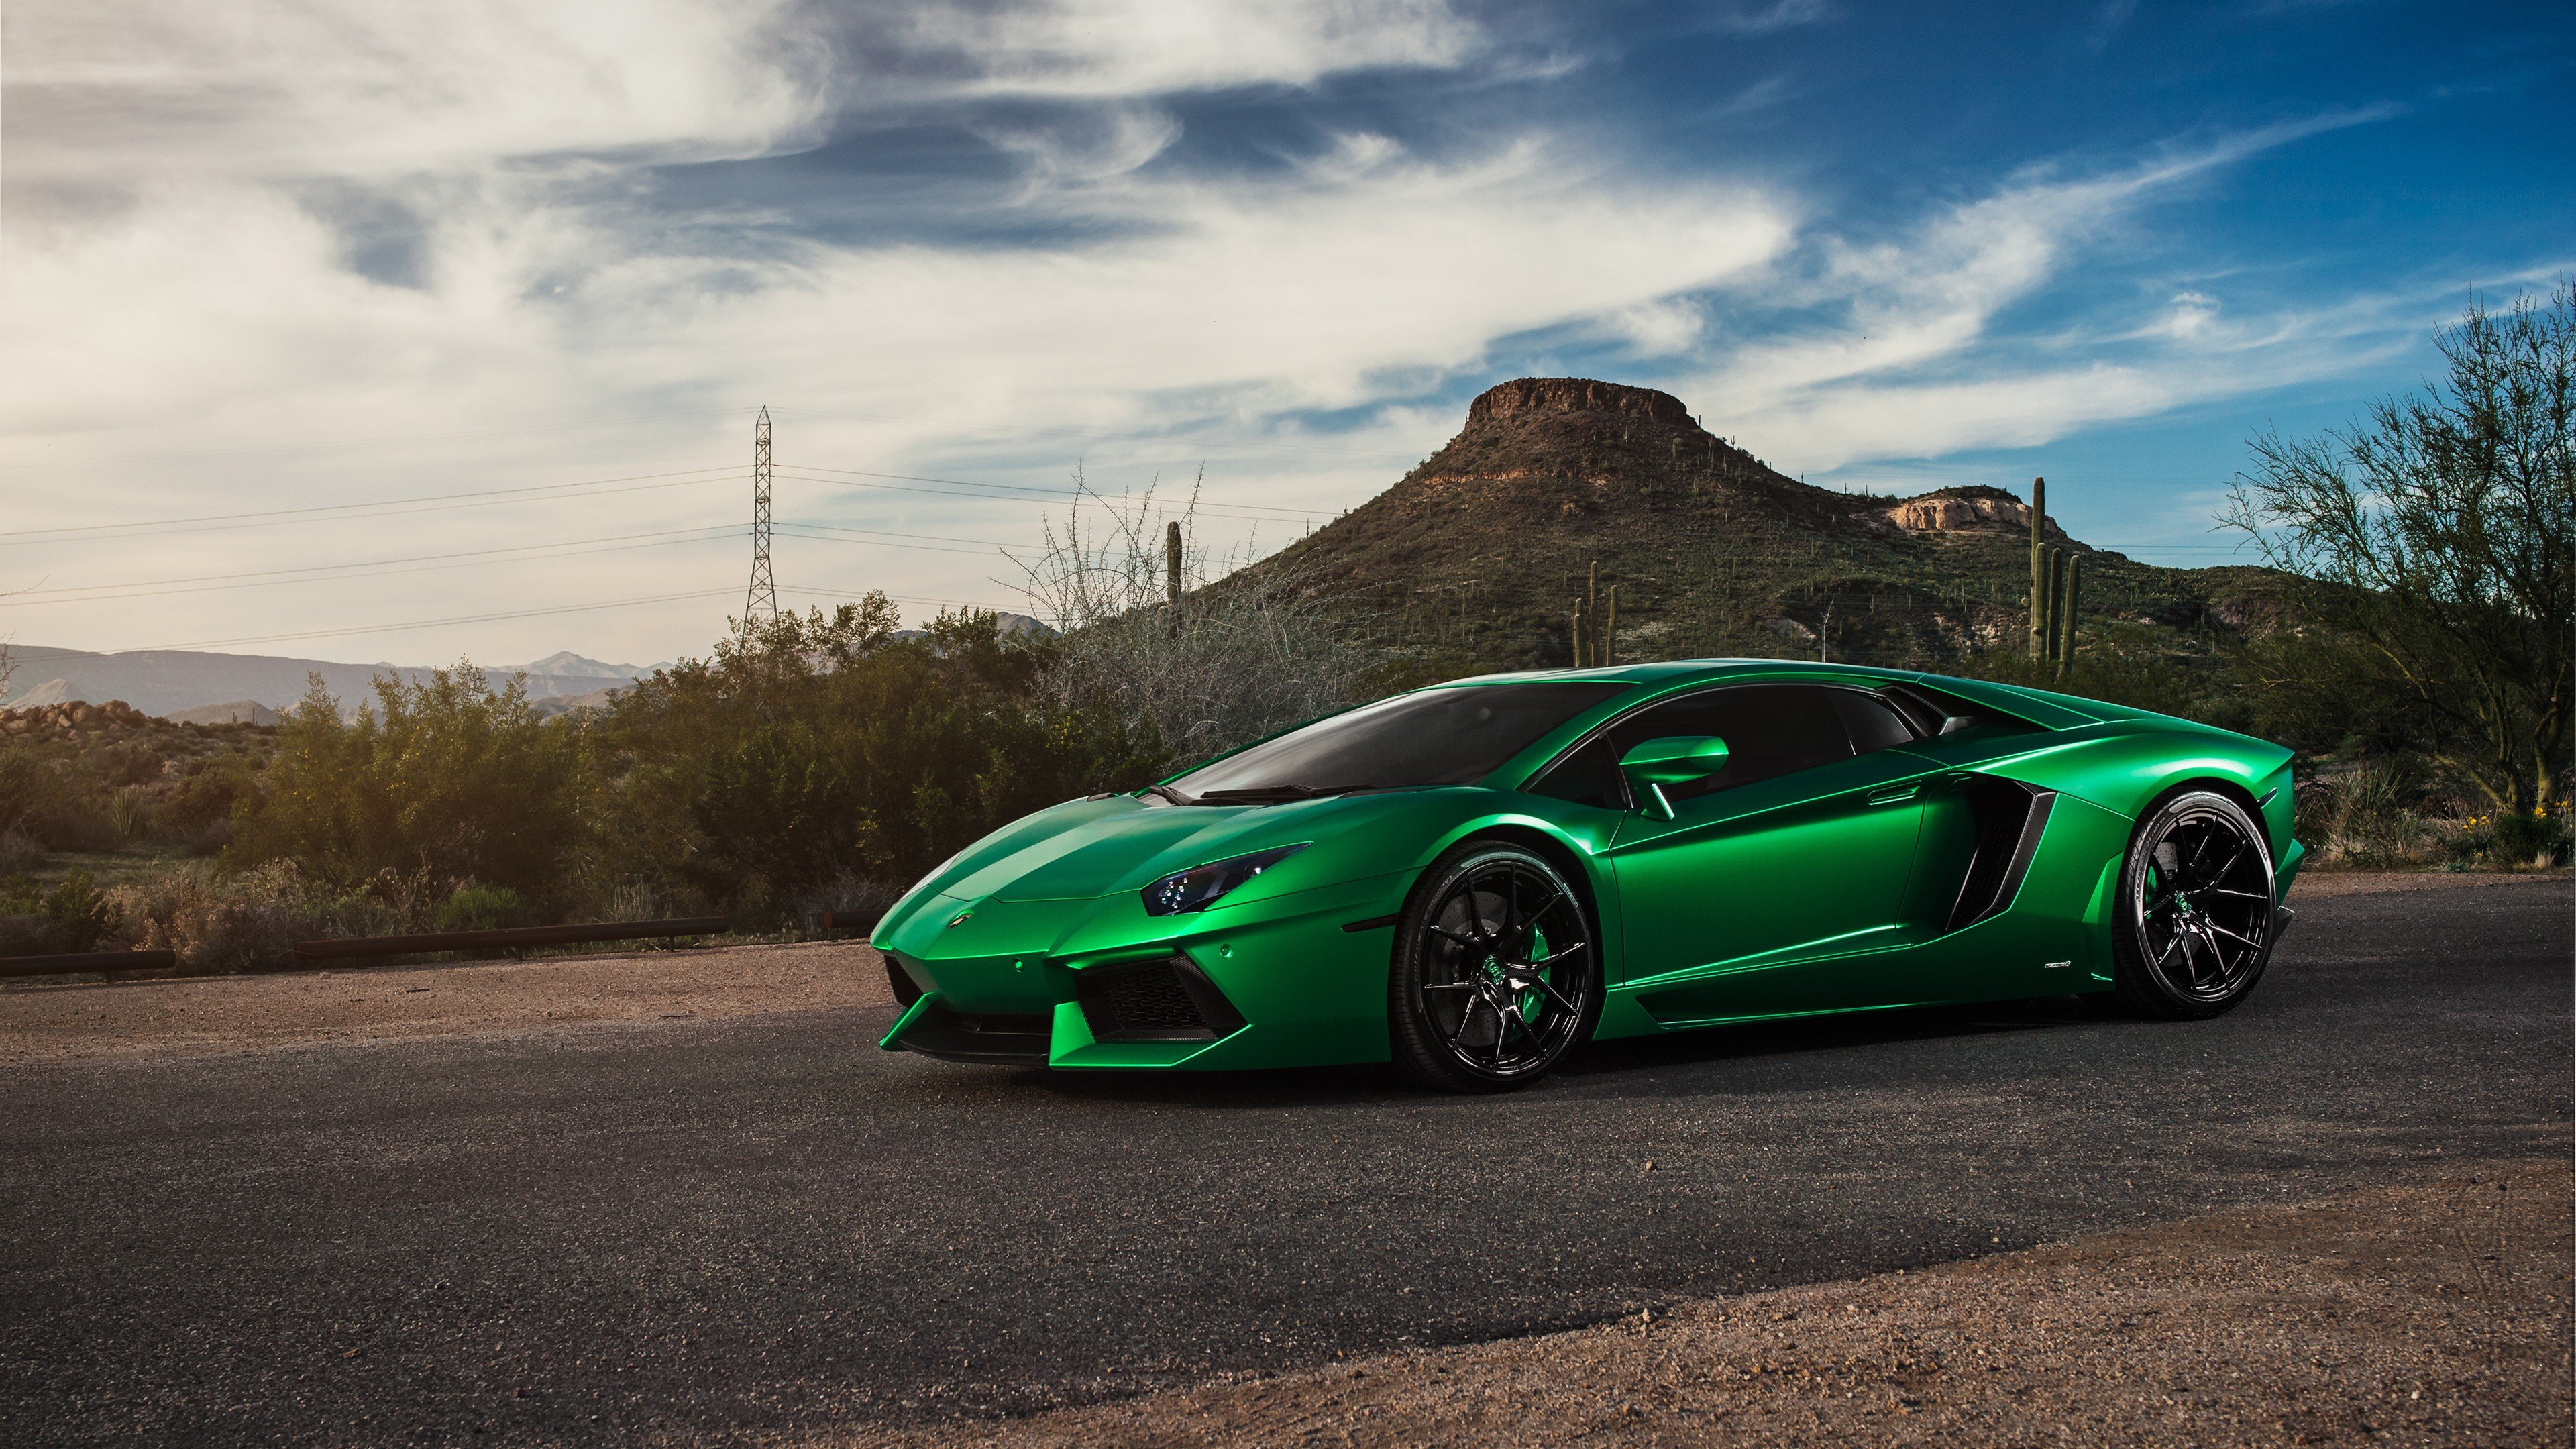 Lamborghini Aventador Green 4k, HD Cars, 4k Wallpaper